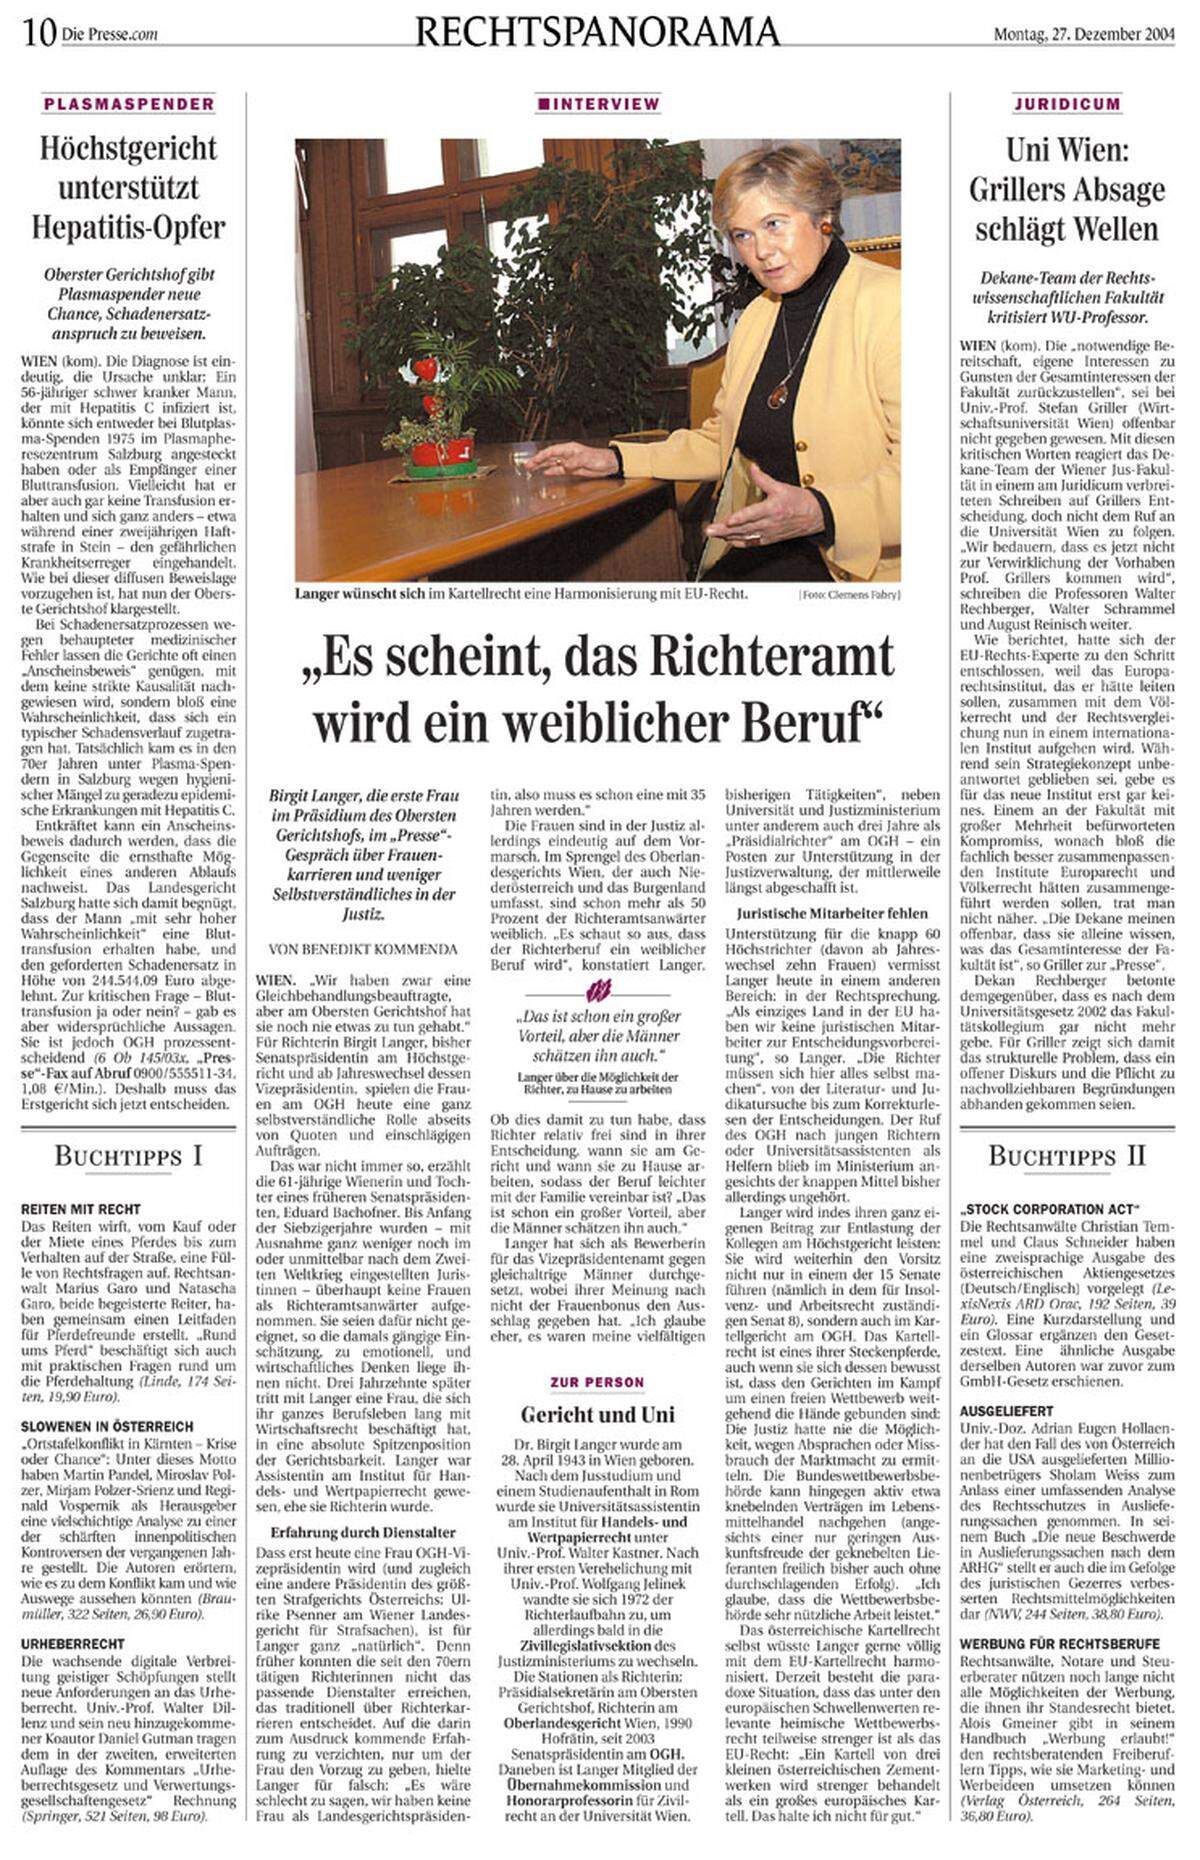 27. Dezember 2004: OGH-Richterin Birgit Langer wird als erste Frau Vizepräsidentin des Höchstgerichts. "Es scheint, das Richteramt wird ein weiblicher Beruf", sagt sie im Interview zu ihrem Amtsantritt. 